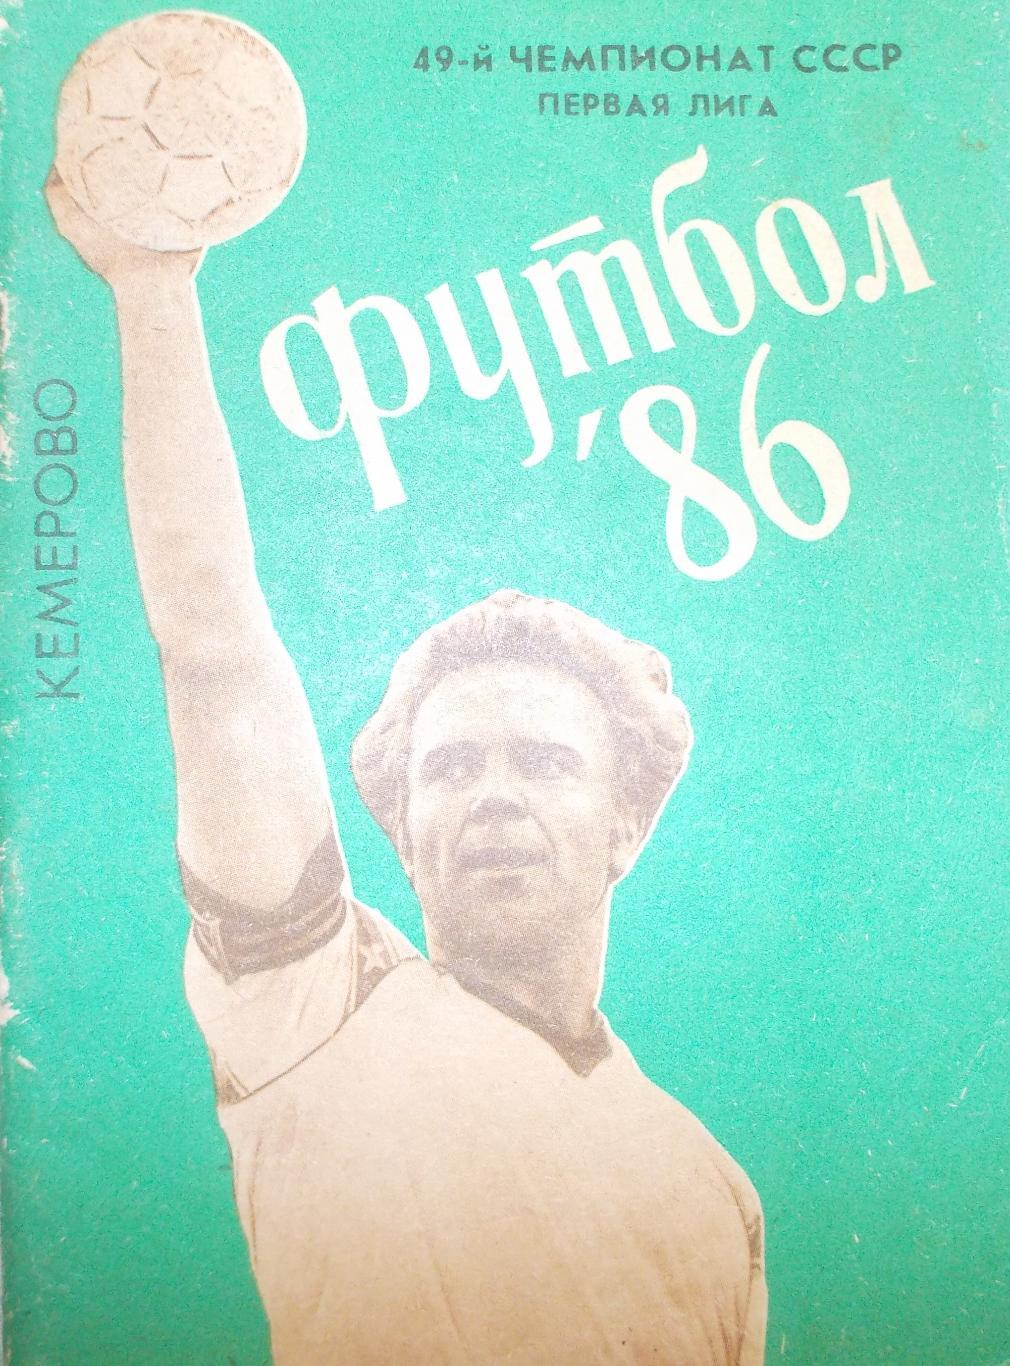 Календарь-справочник. Кемерово. Футбол.1986 год